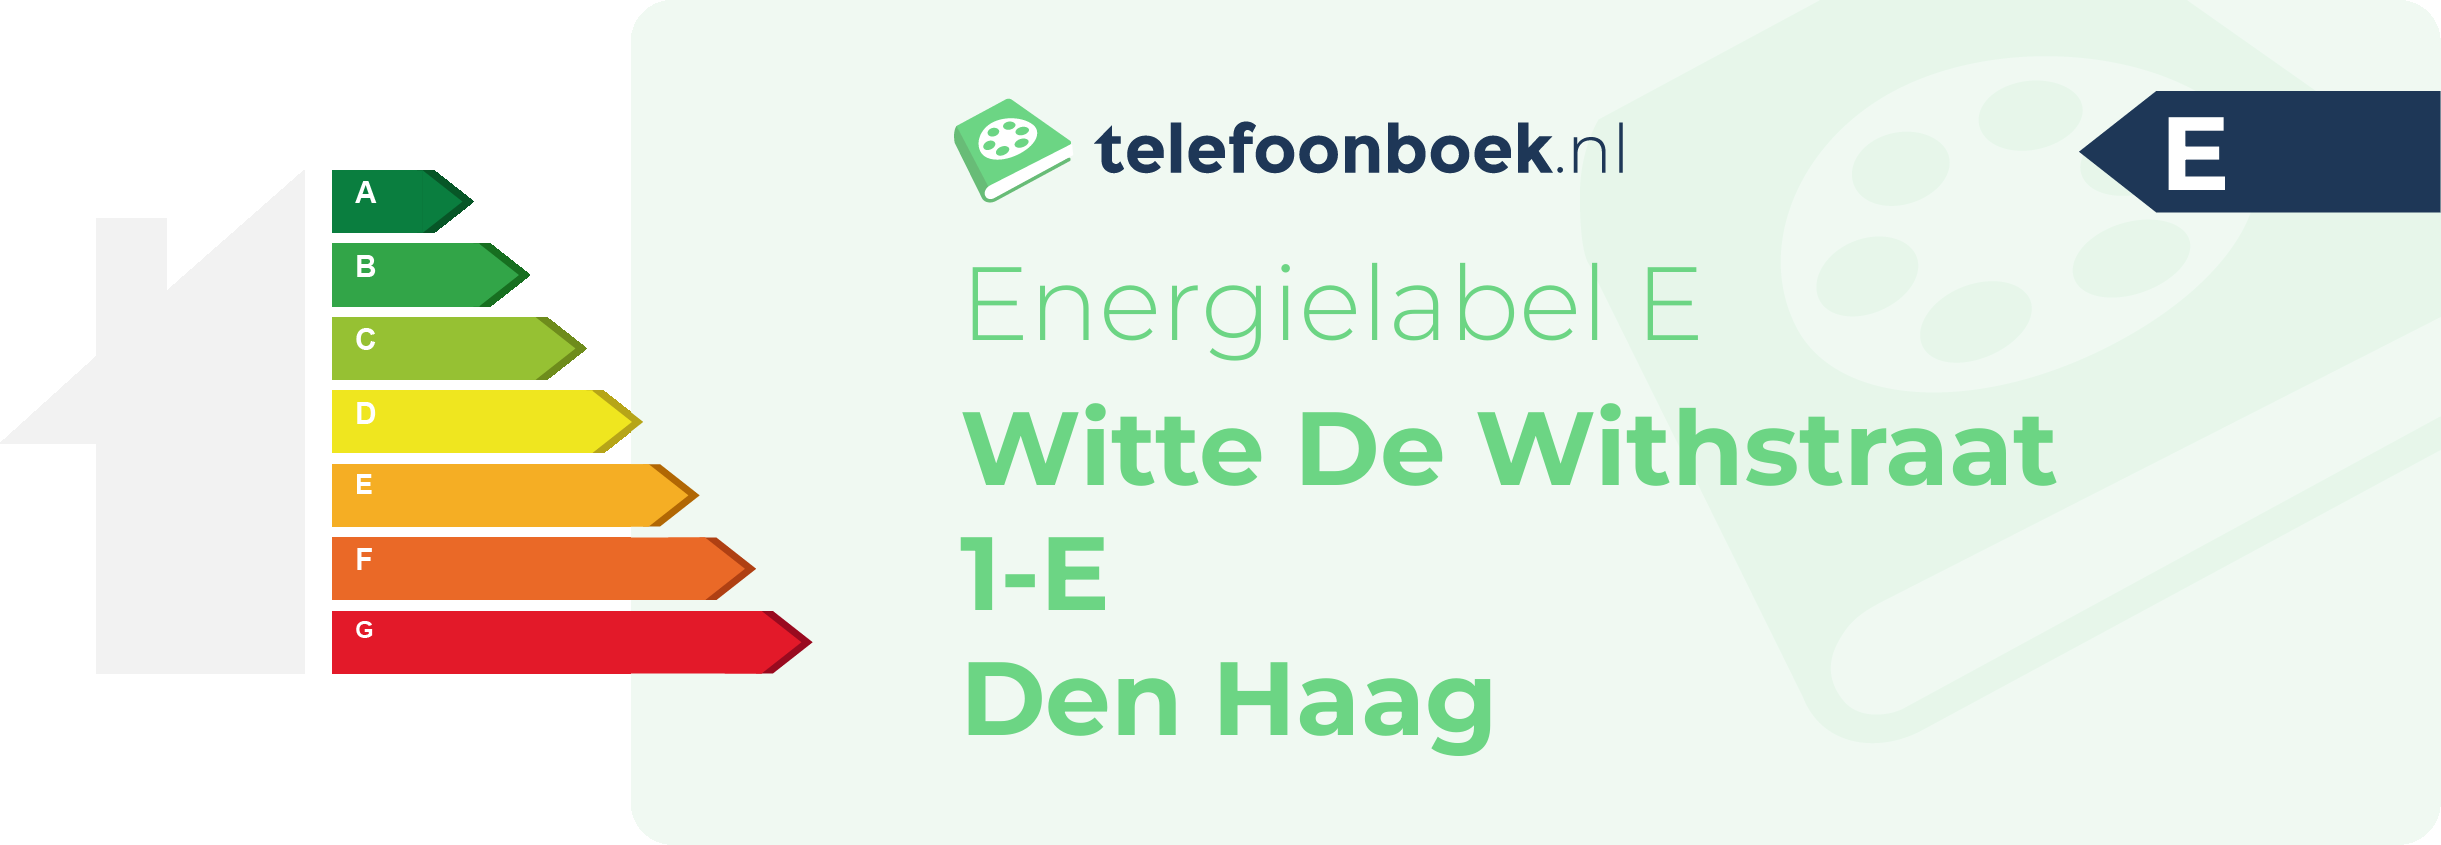 Energielabel Witte De Withstraat 1-E Den Haag